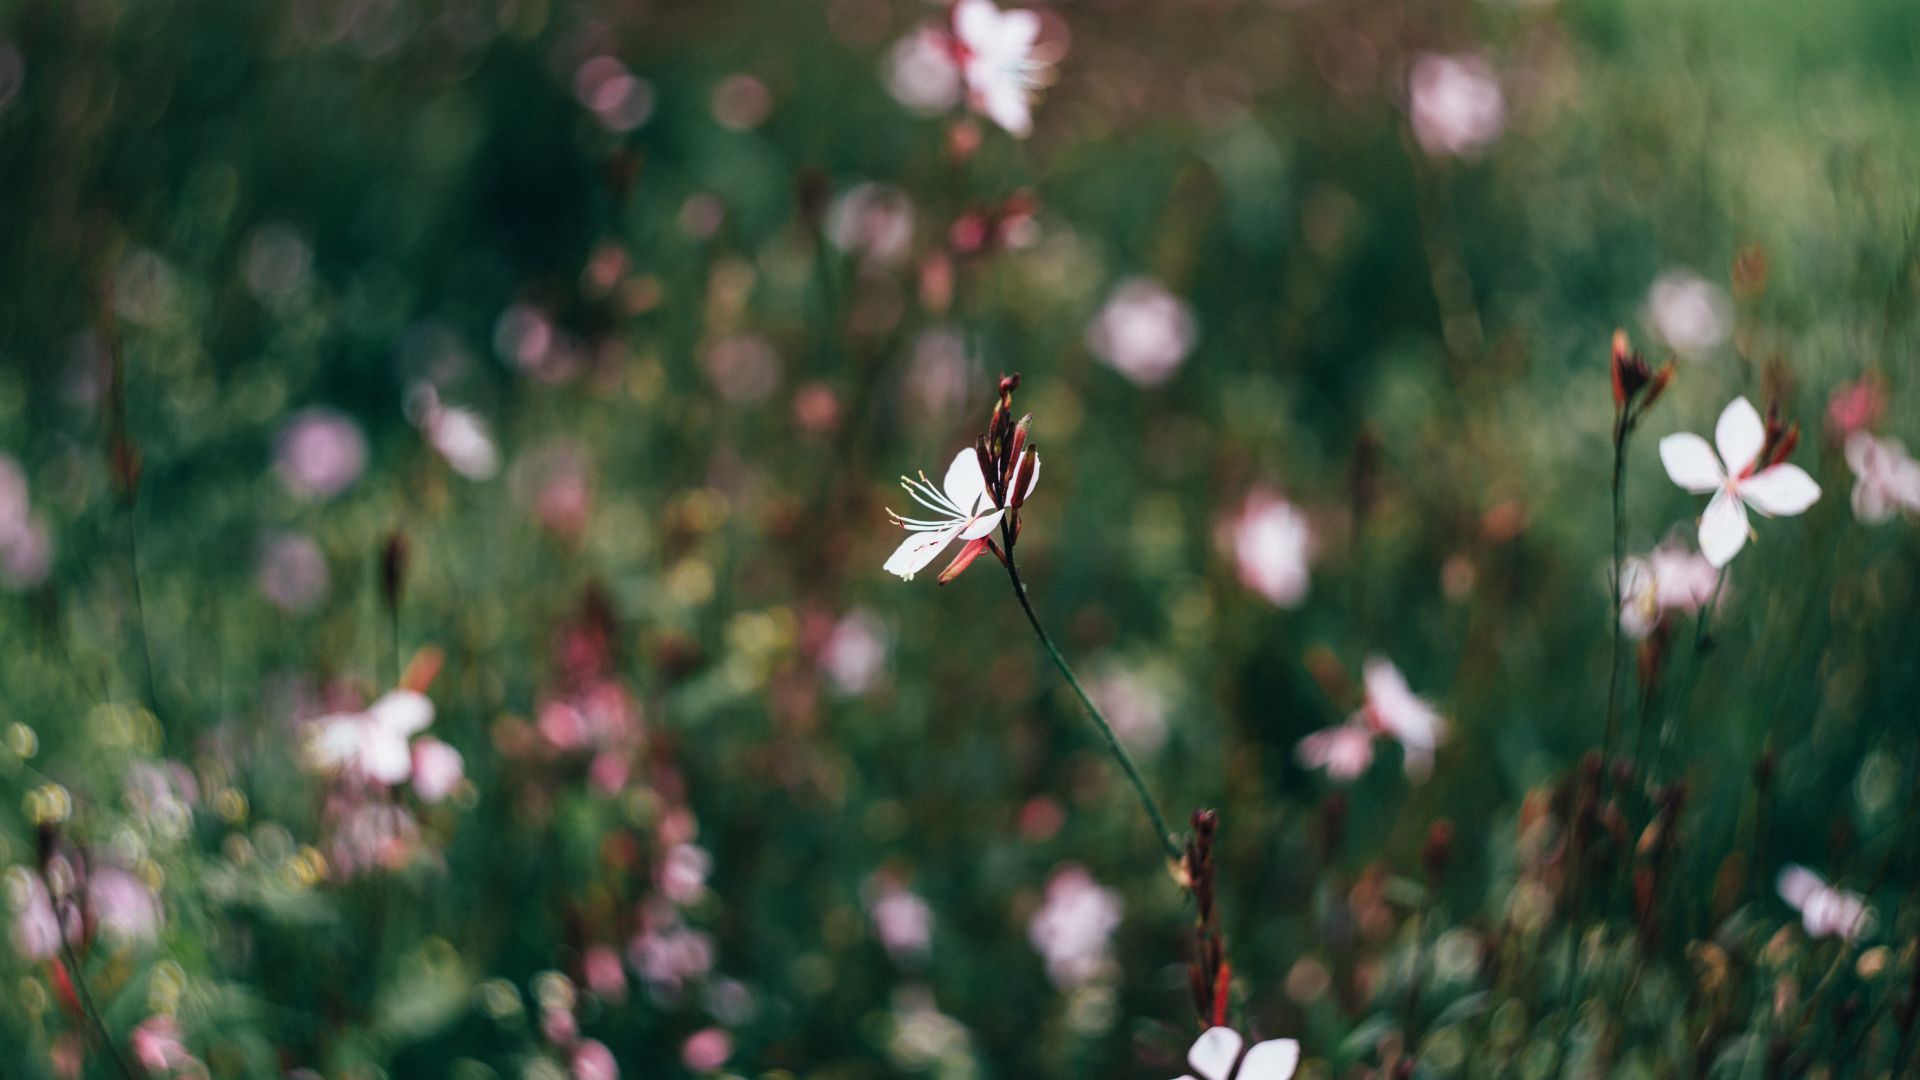 Wallpaper Flowers field, flowers, blurred